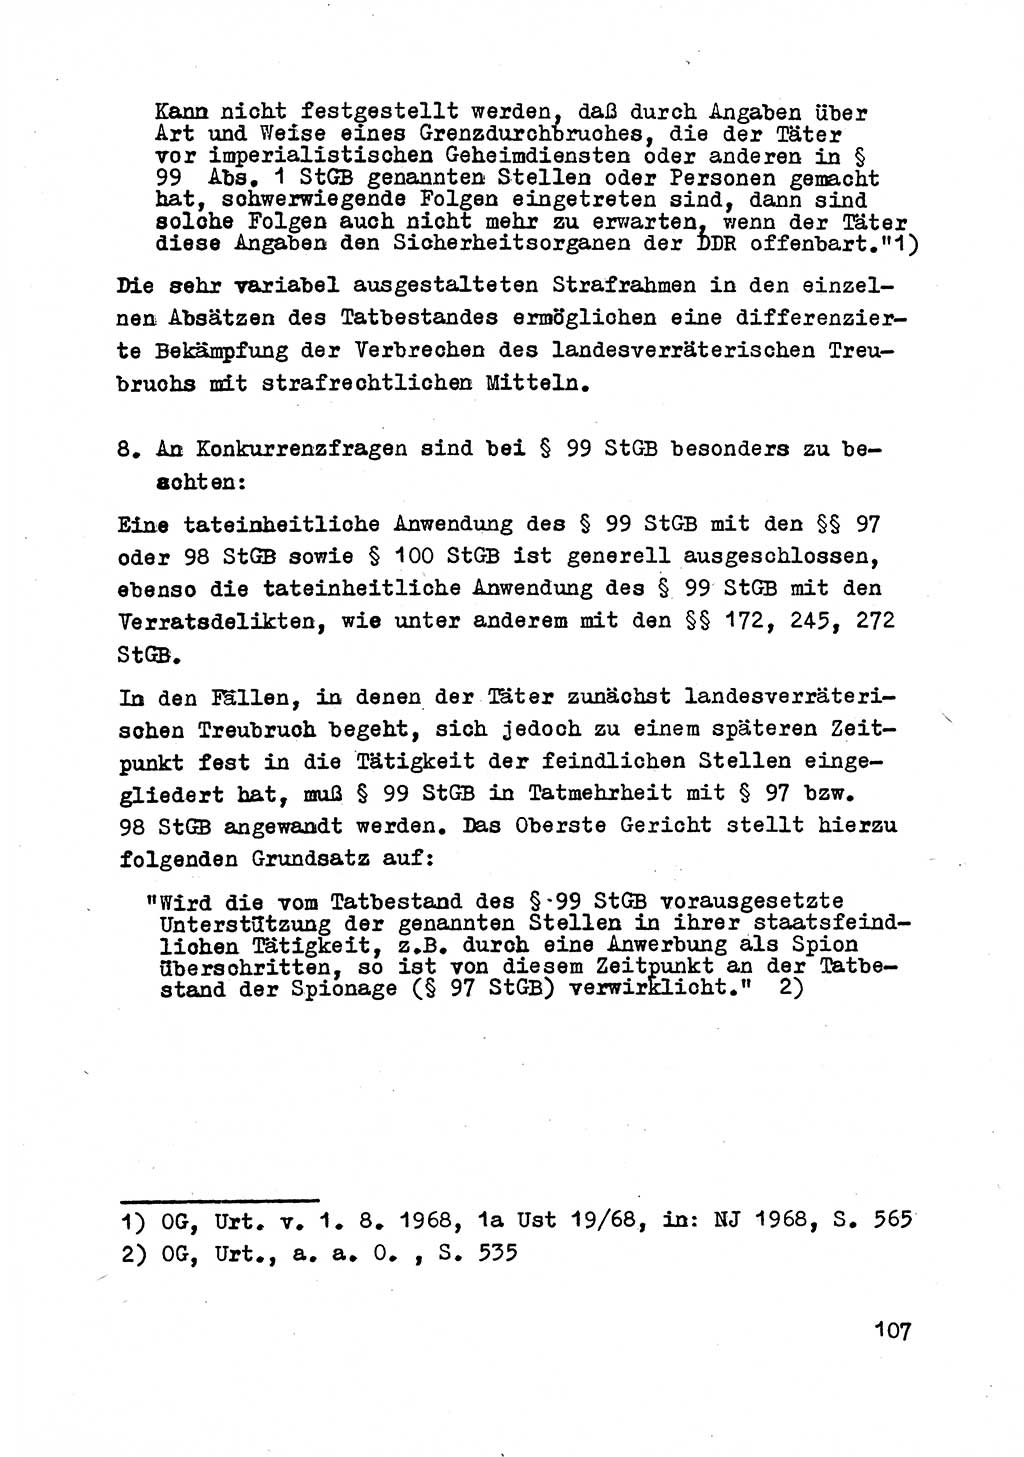 Strafrecht der DDR (Deutsche Demokratische Republik), Besonderer Teil, Lehrmaterial, Heft 2 1969, Seite 107 (Strafr. DDR BT Lehrmat. H. 2 1969, S. 107)